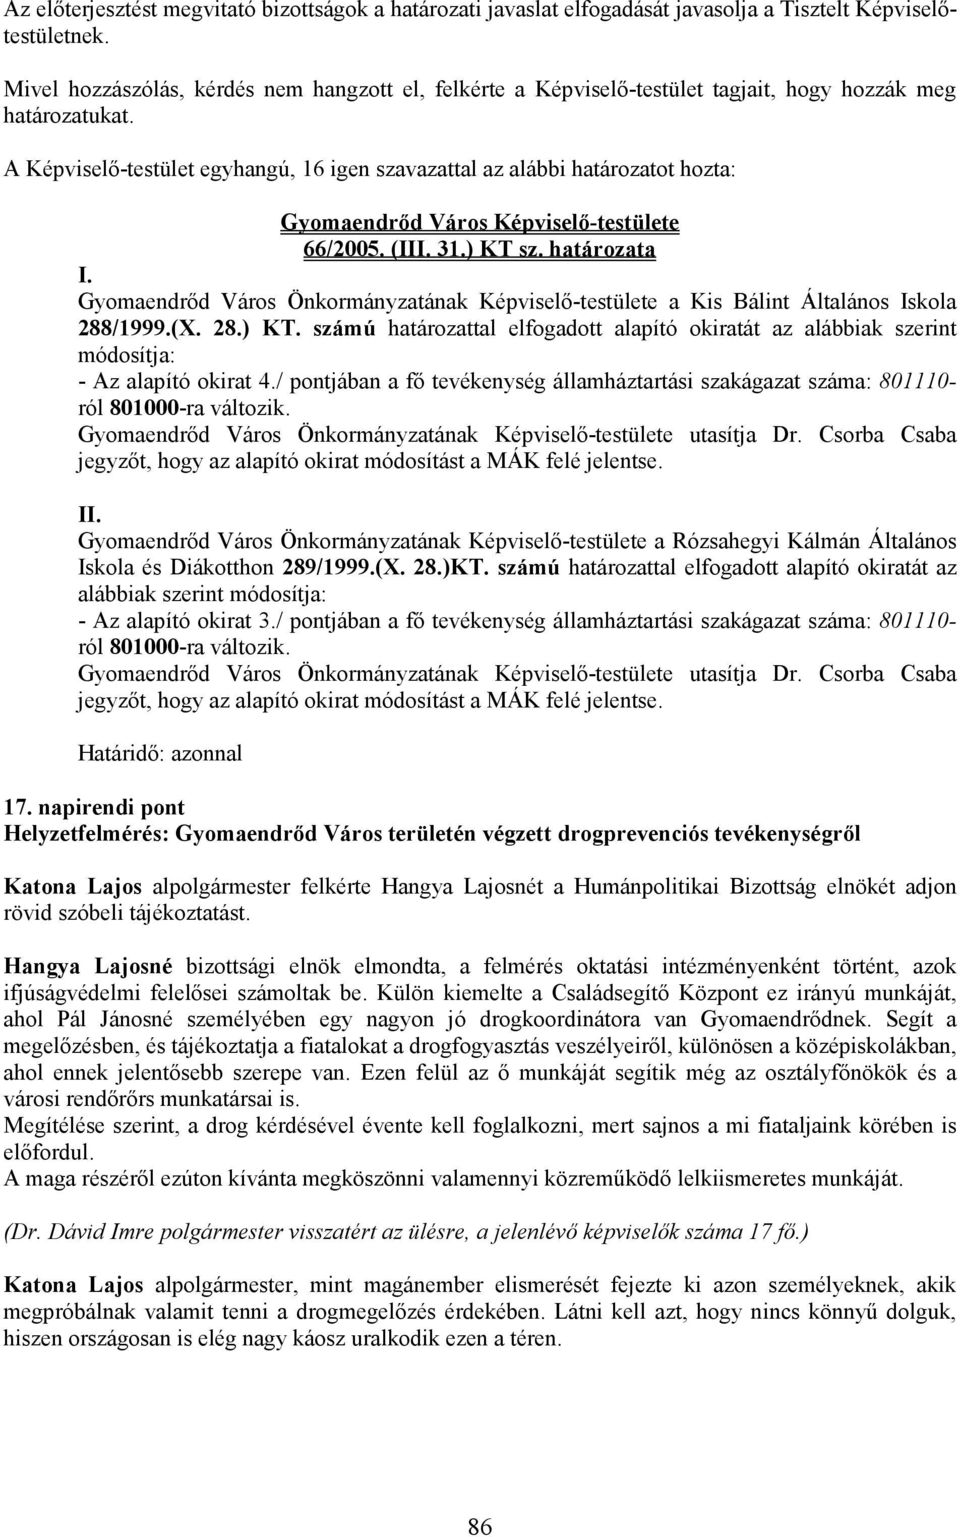 A Képviselı-testület egyhangú, 16 igen szavazattal az alábbi határozatot hozta: 66/2005. (III. 31.) KT sz. határozata I.